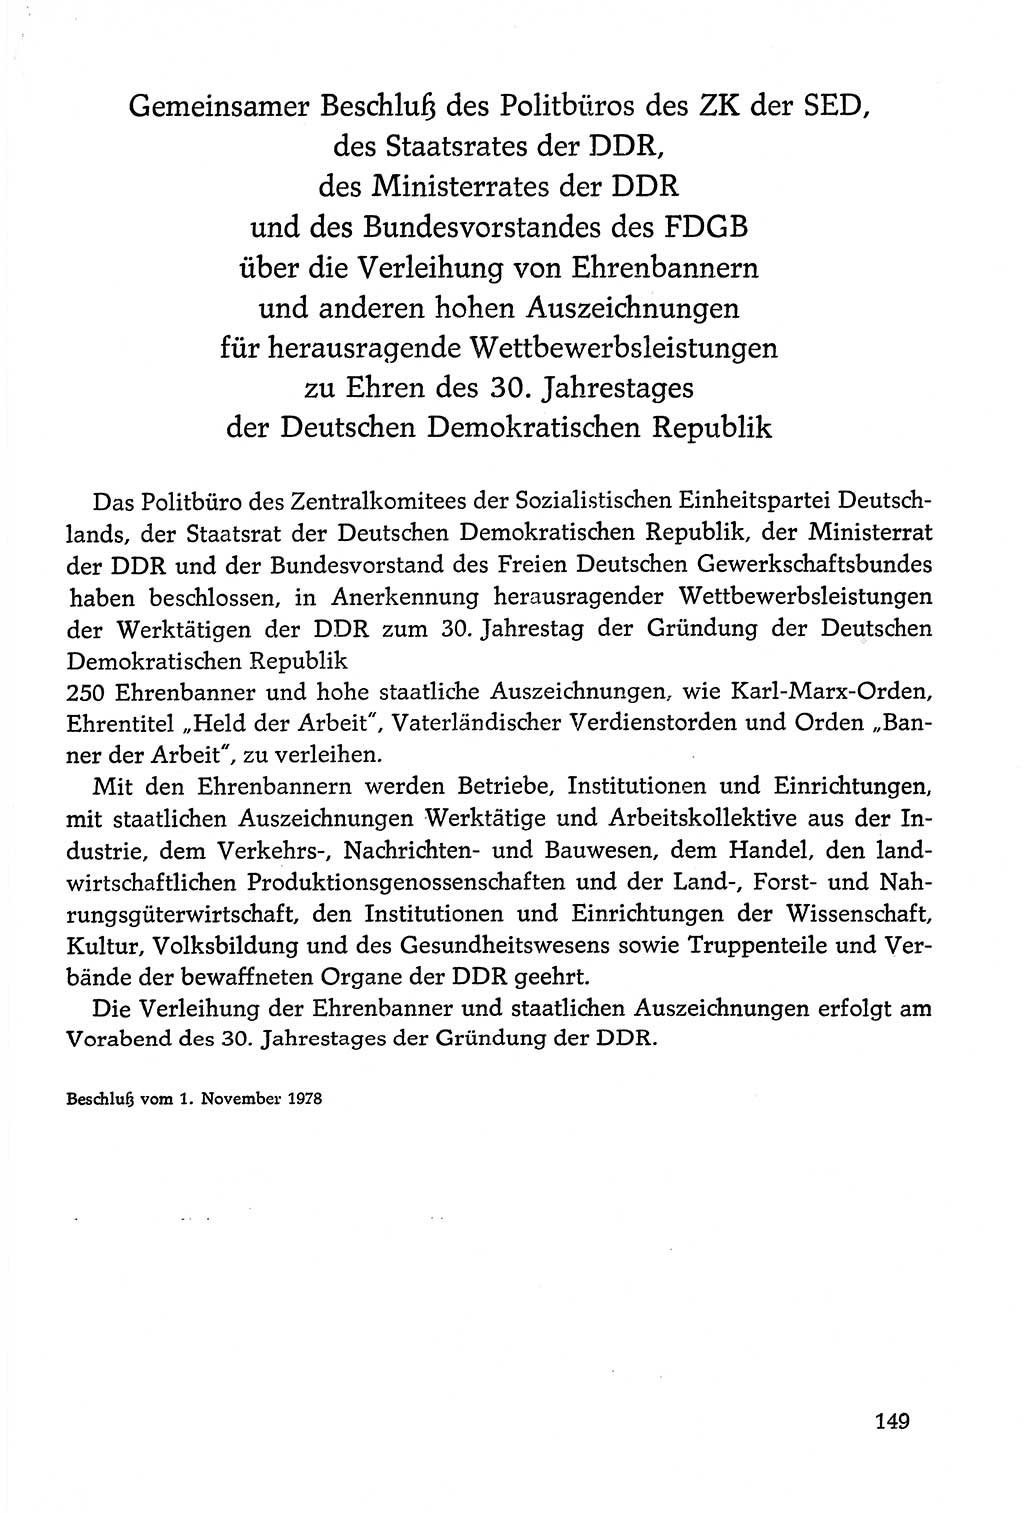 Dokumente der Sozialistischen Einheitspartei Deutschlands (SED) [Deutsche Demokratische Republik (DDR)] 1978-1979, Seite 149 (Dok. SED DDR 1978-1979, S. 149)